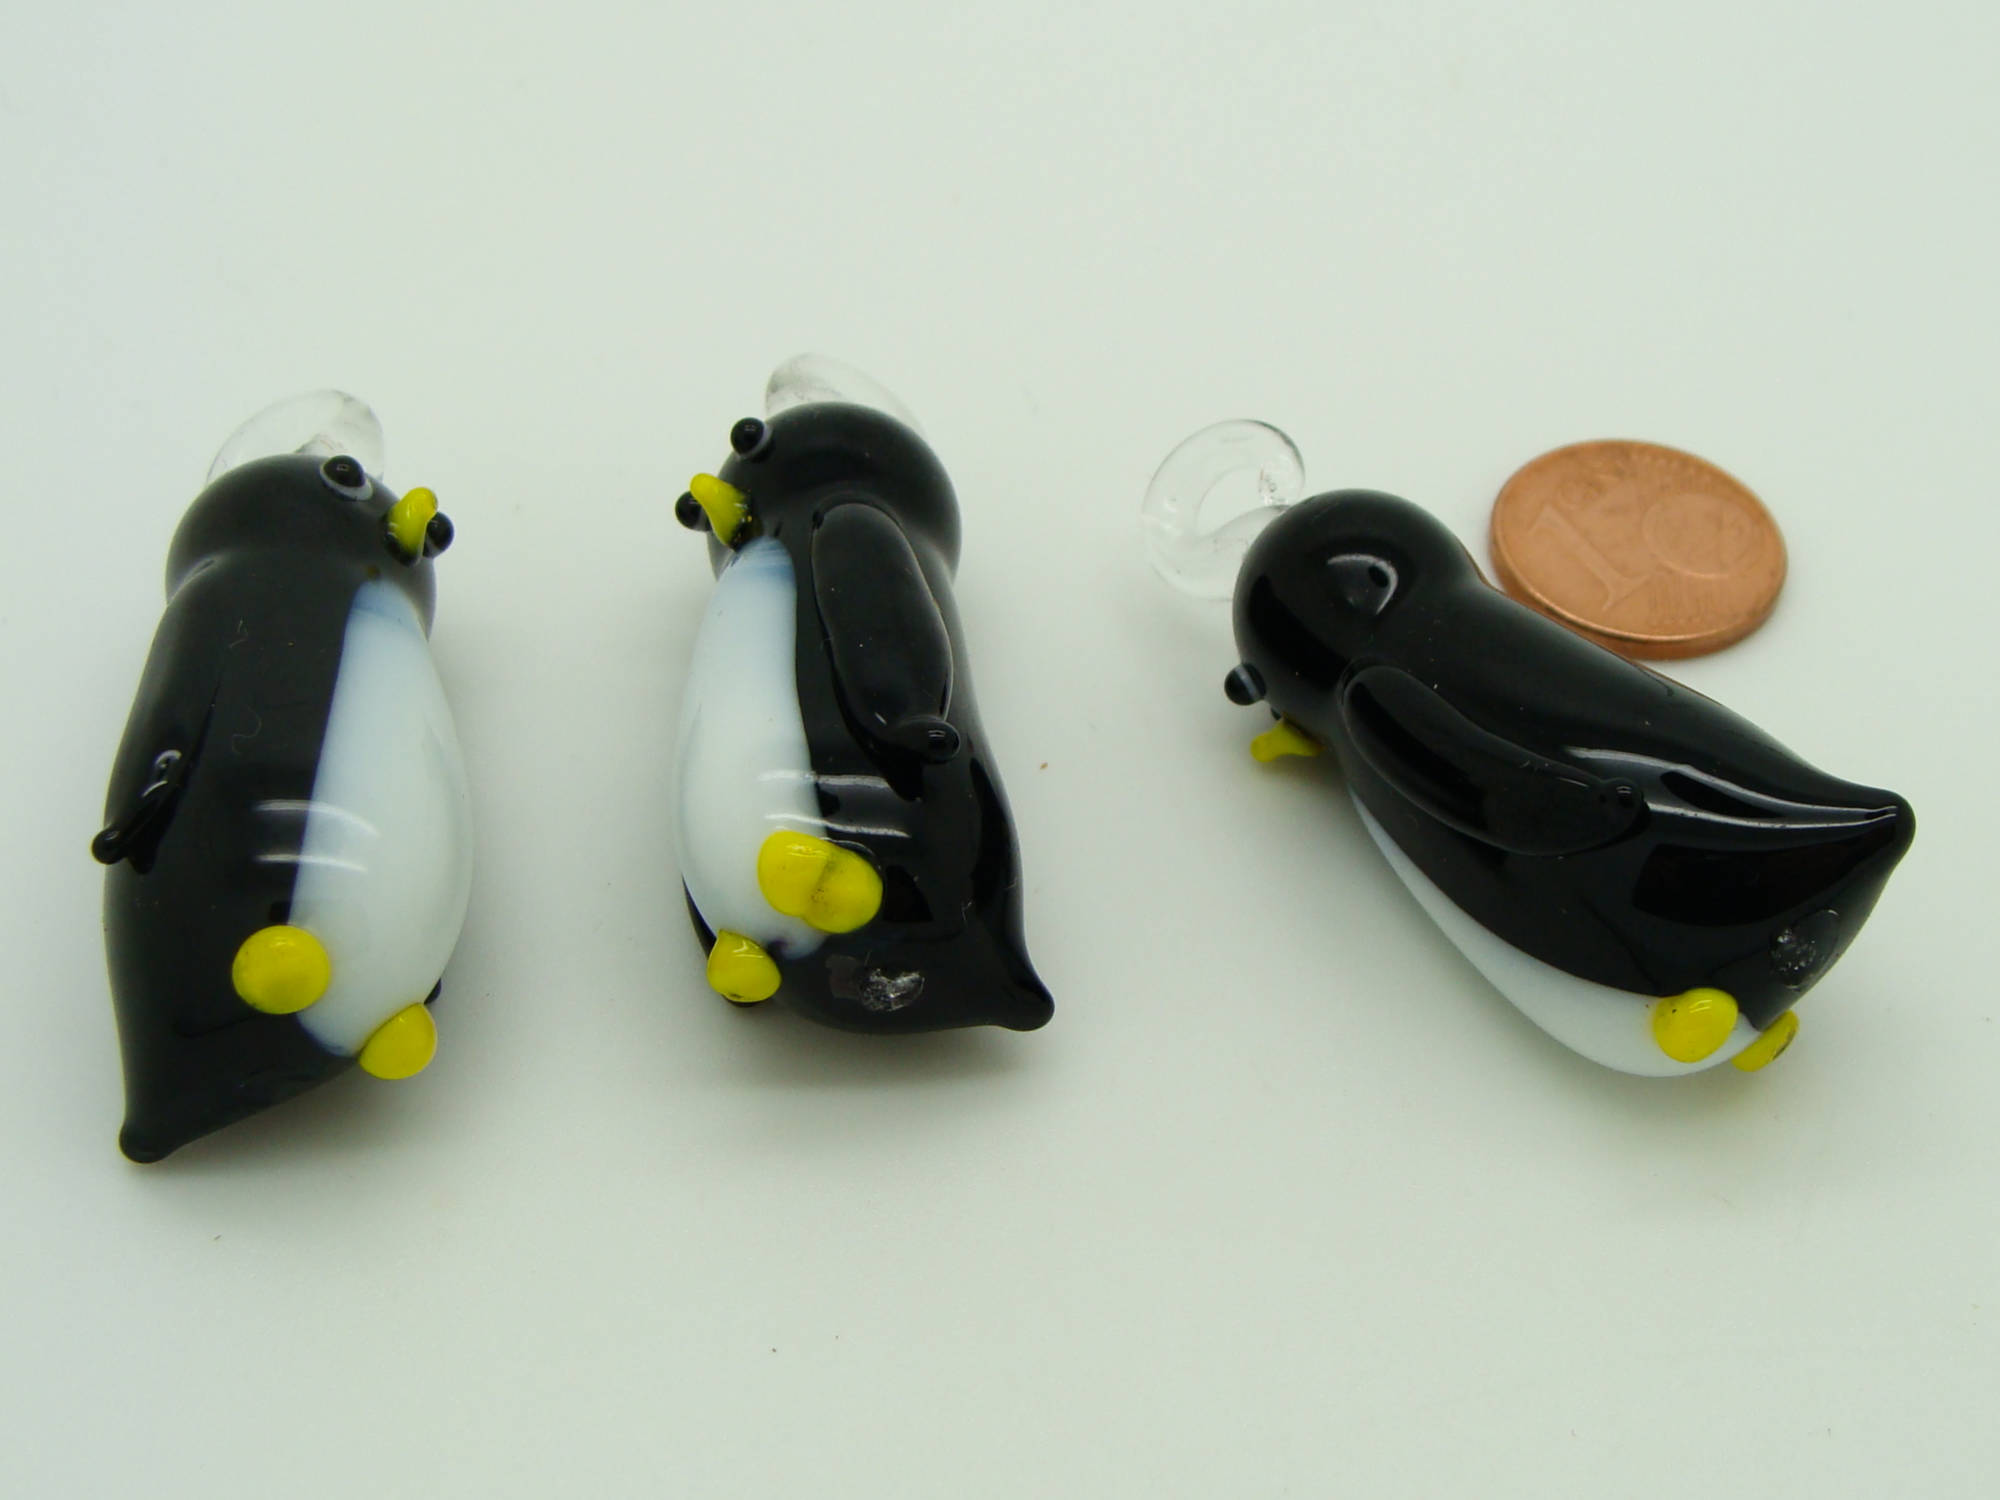 pendentif pingouin noir Pend-85